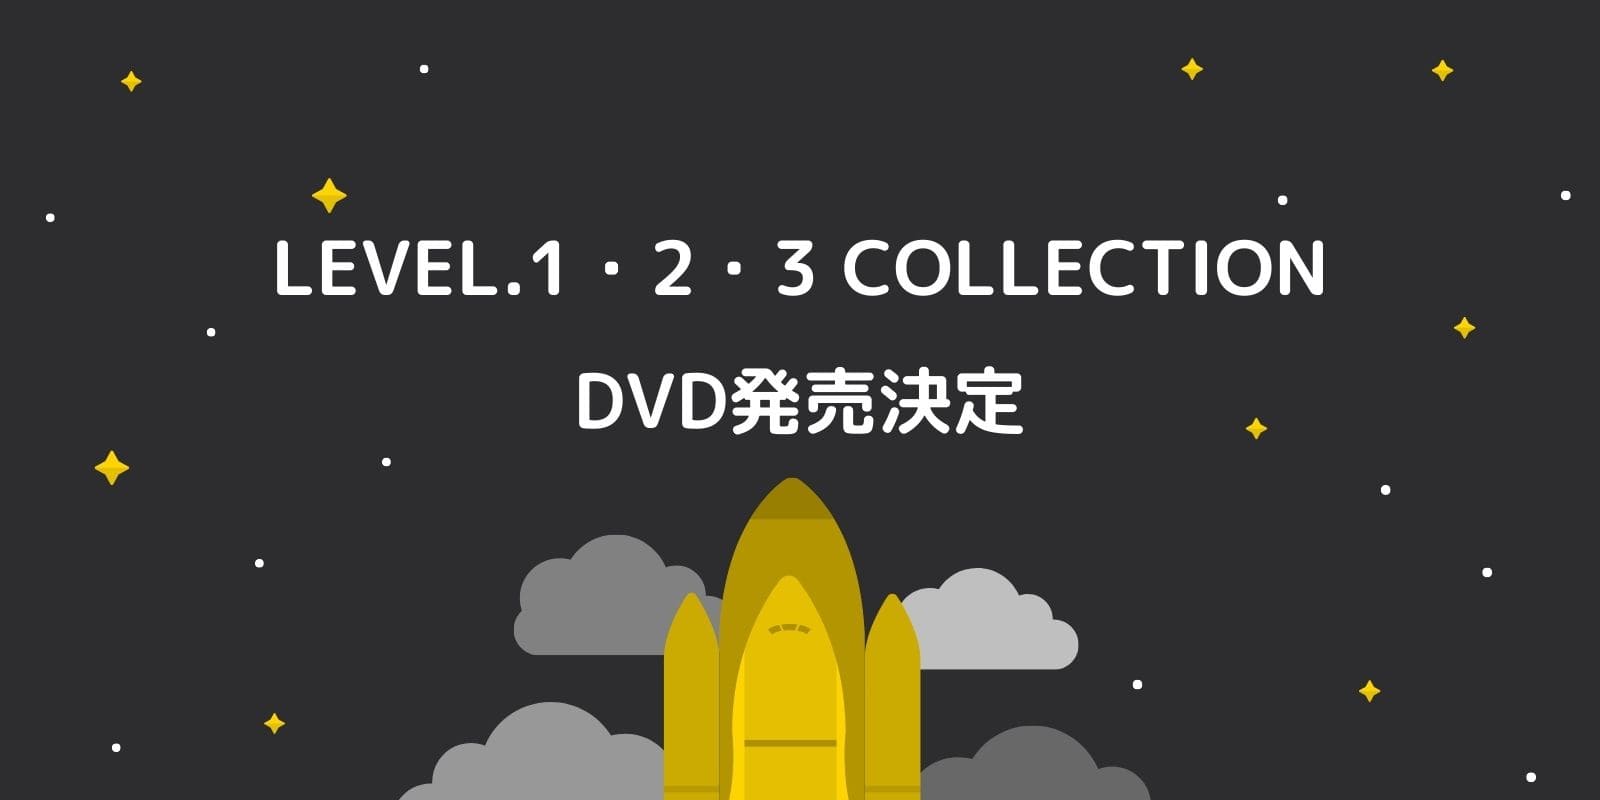 キヨ・レトルト主催イベント「LEVEL.1・2・3」のDVD発売について 